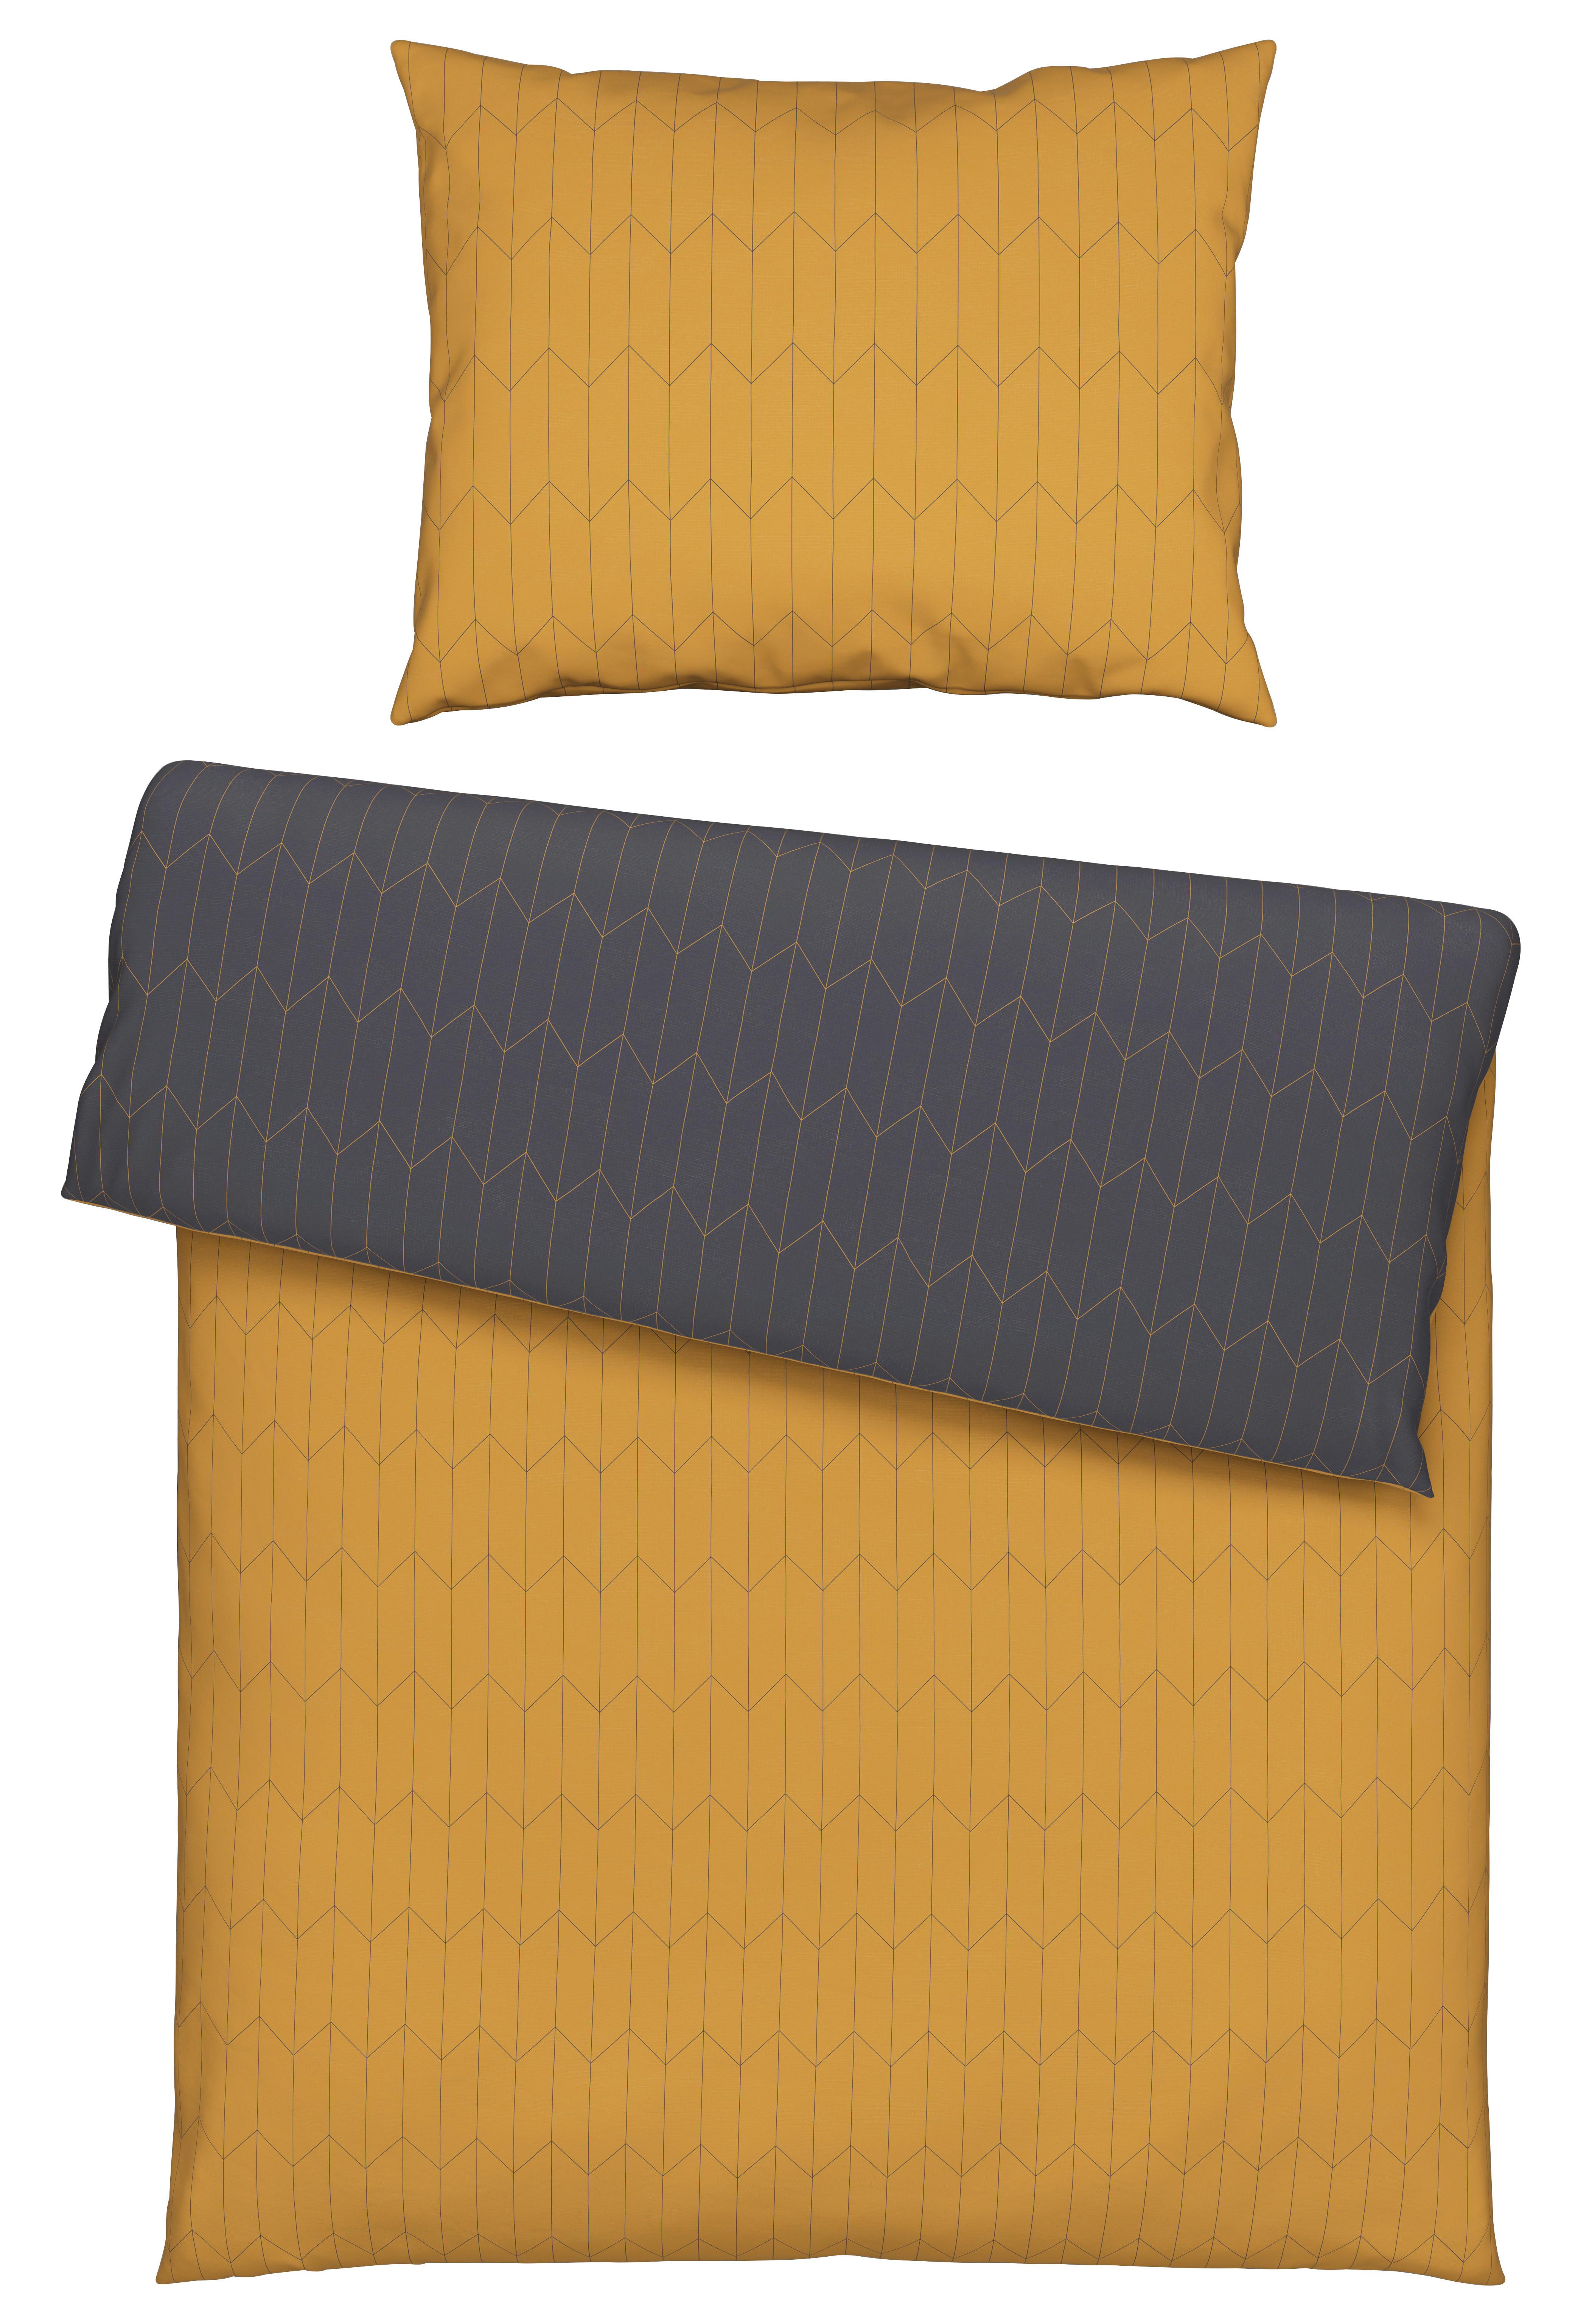 Obojstranná Posteľná Bielizeň Tegola, 140/200cm - žltá/sivá, Moderný, textil (140/200cm) - Modern Living